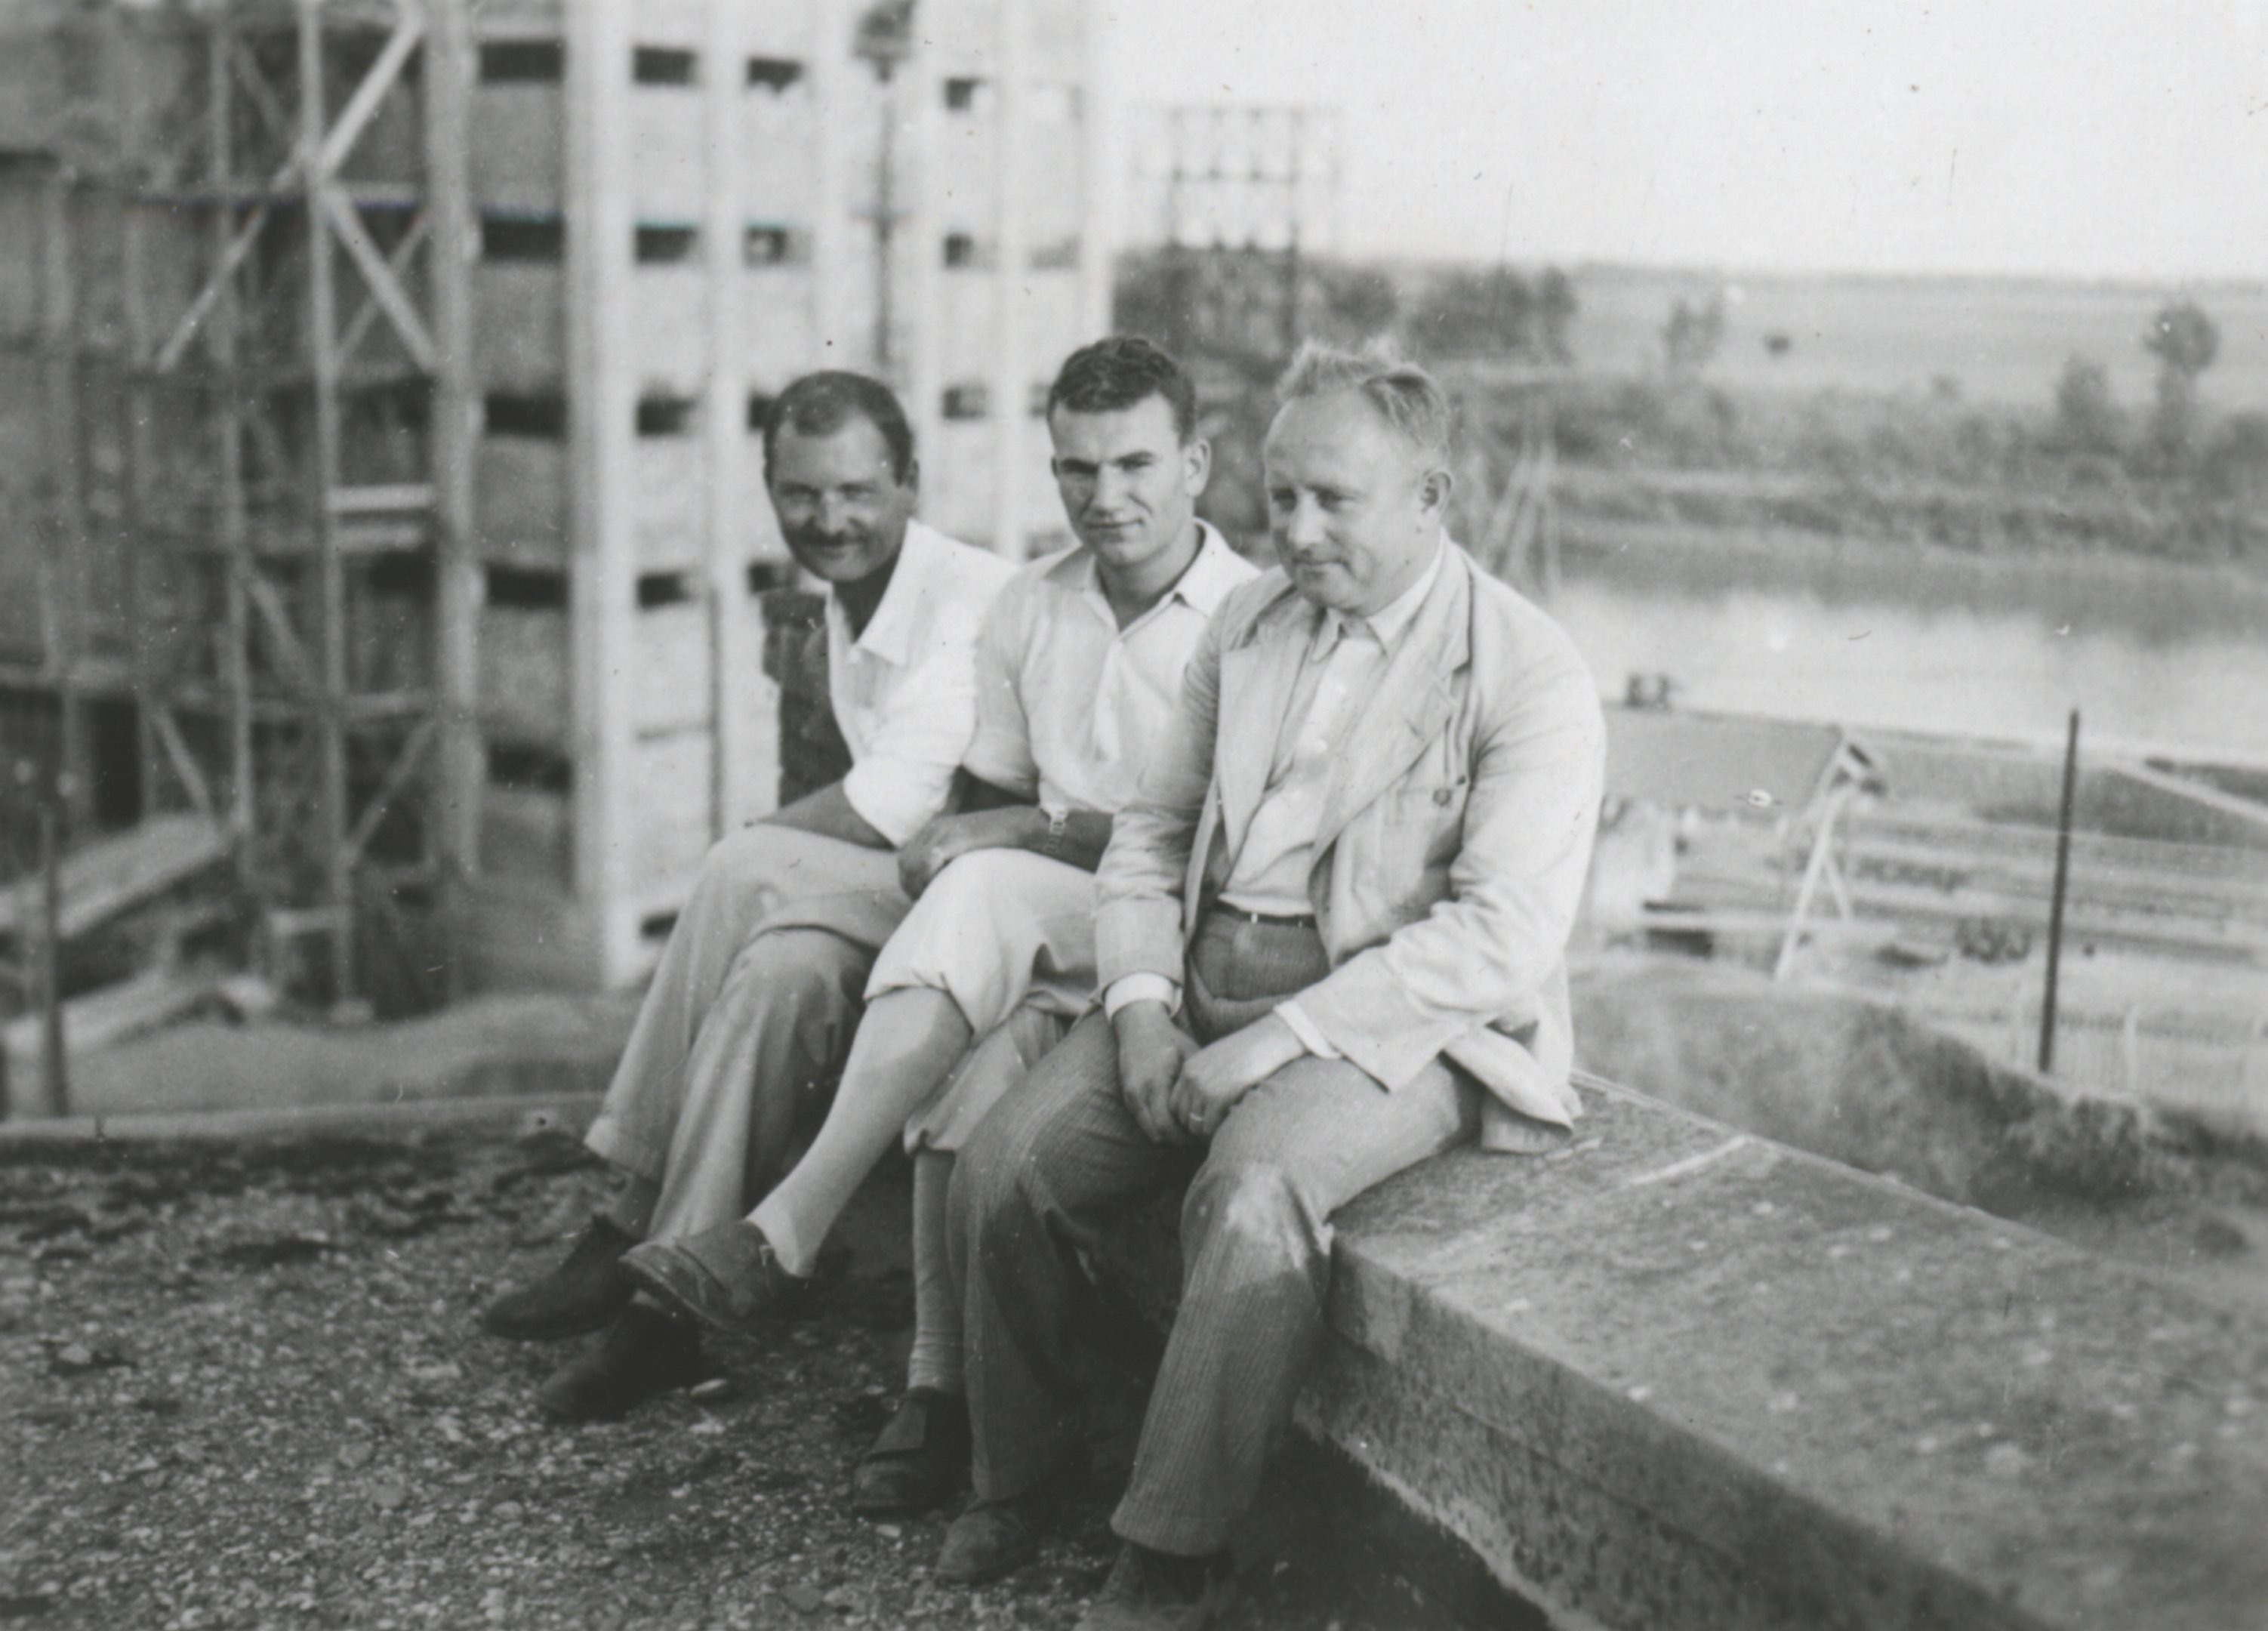 M. kir. építésvezetőség. Babos, Maurer és Berendy, 1934. október 4. (Magyar Környezetvédelmi és Vízügyi Múzeum - Duna Múzeum CC BY-NC-SA)